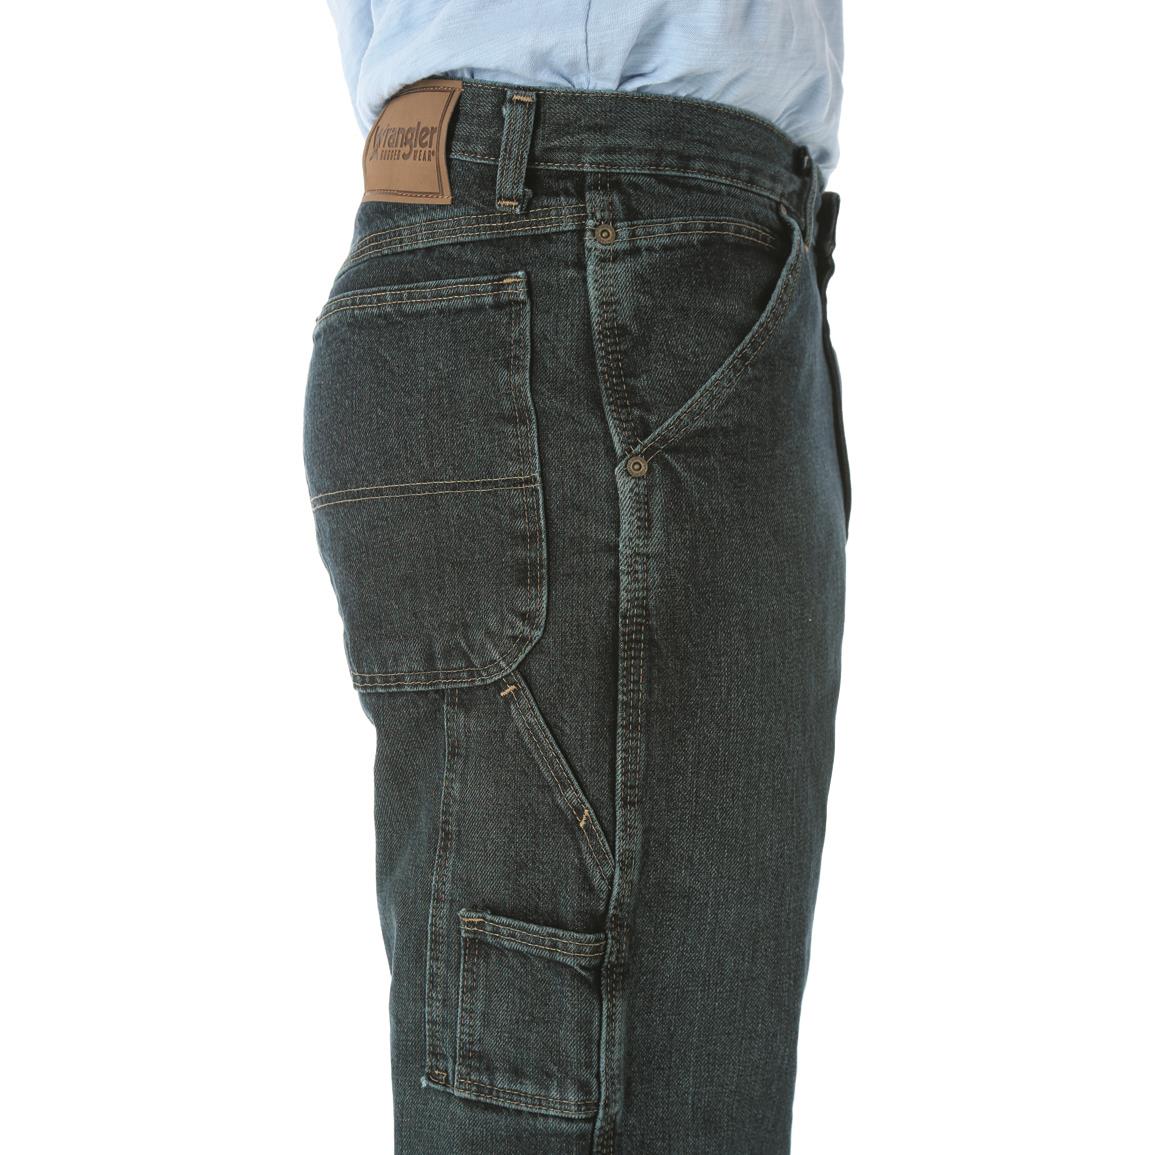 wrangler men's carpenter jeans